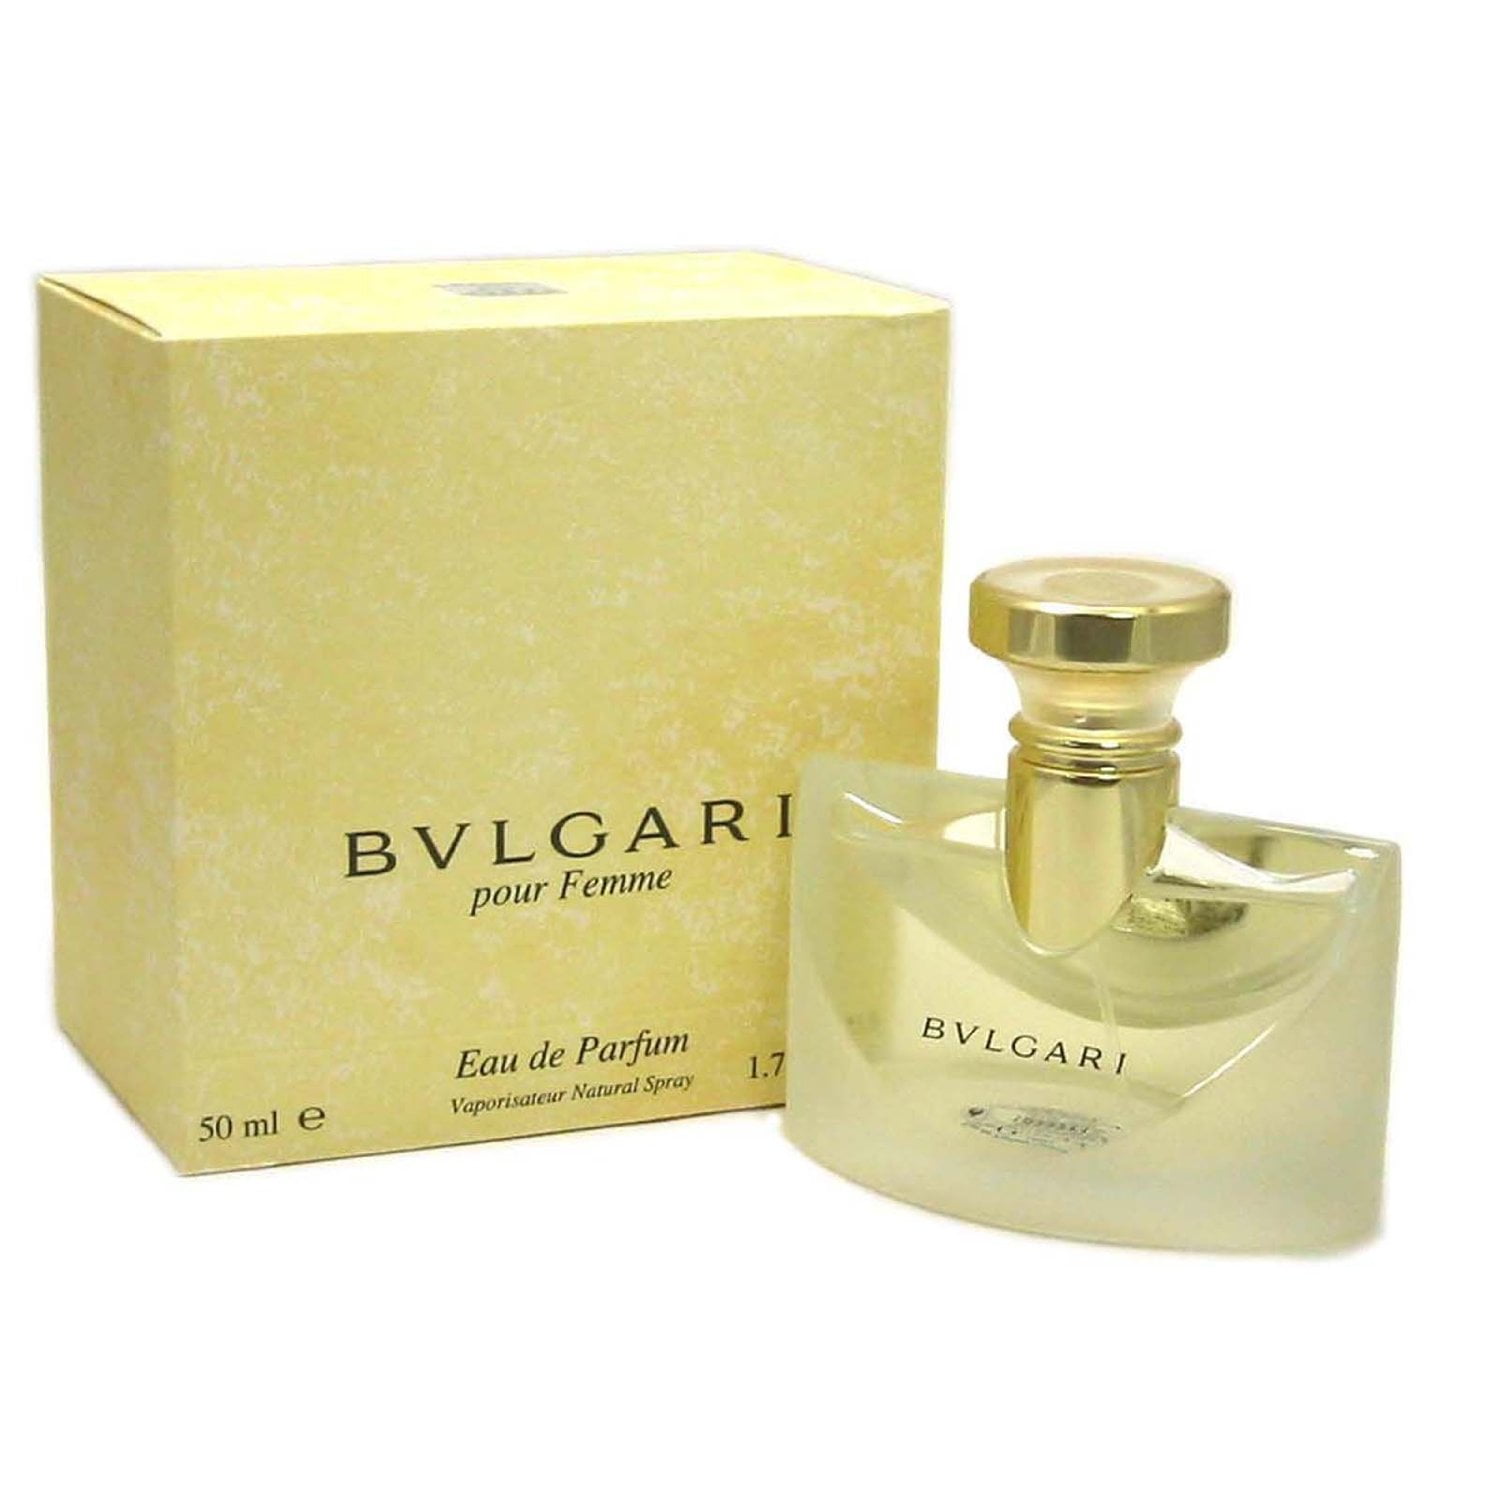 bvlgari femme perfume